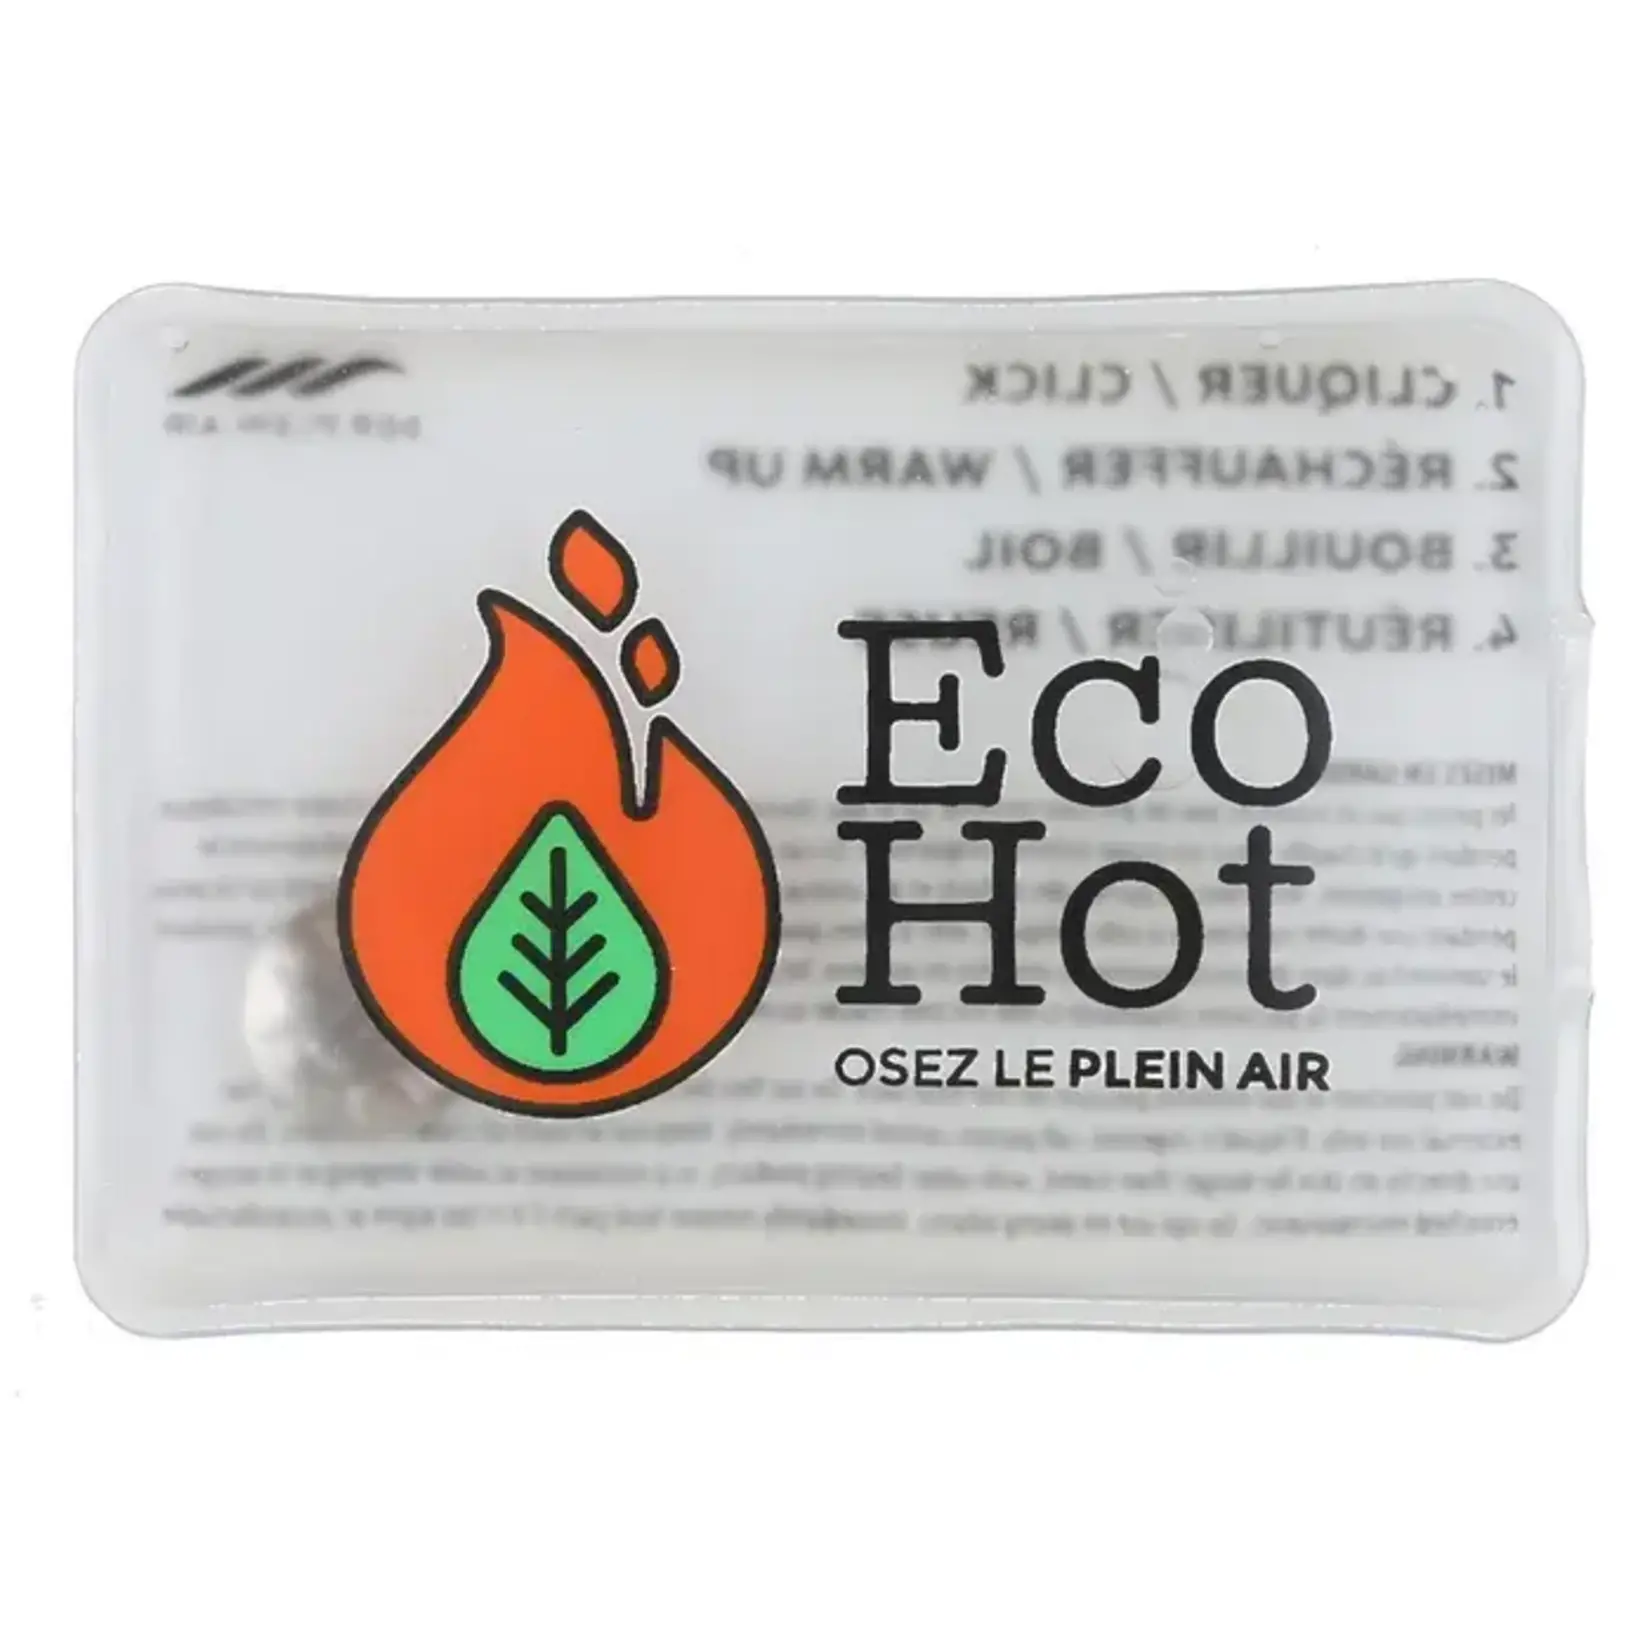 Chauffe-mains et corps réutilisables Eco Hot 30 minutes (Paquet de 2) -  Canac